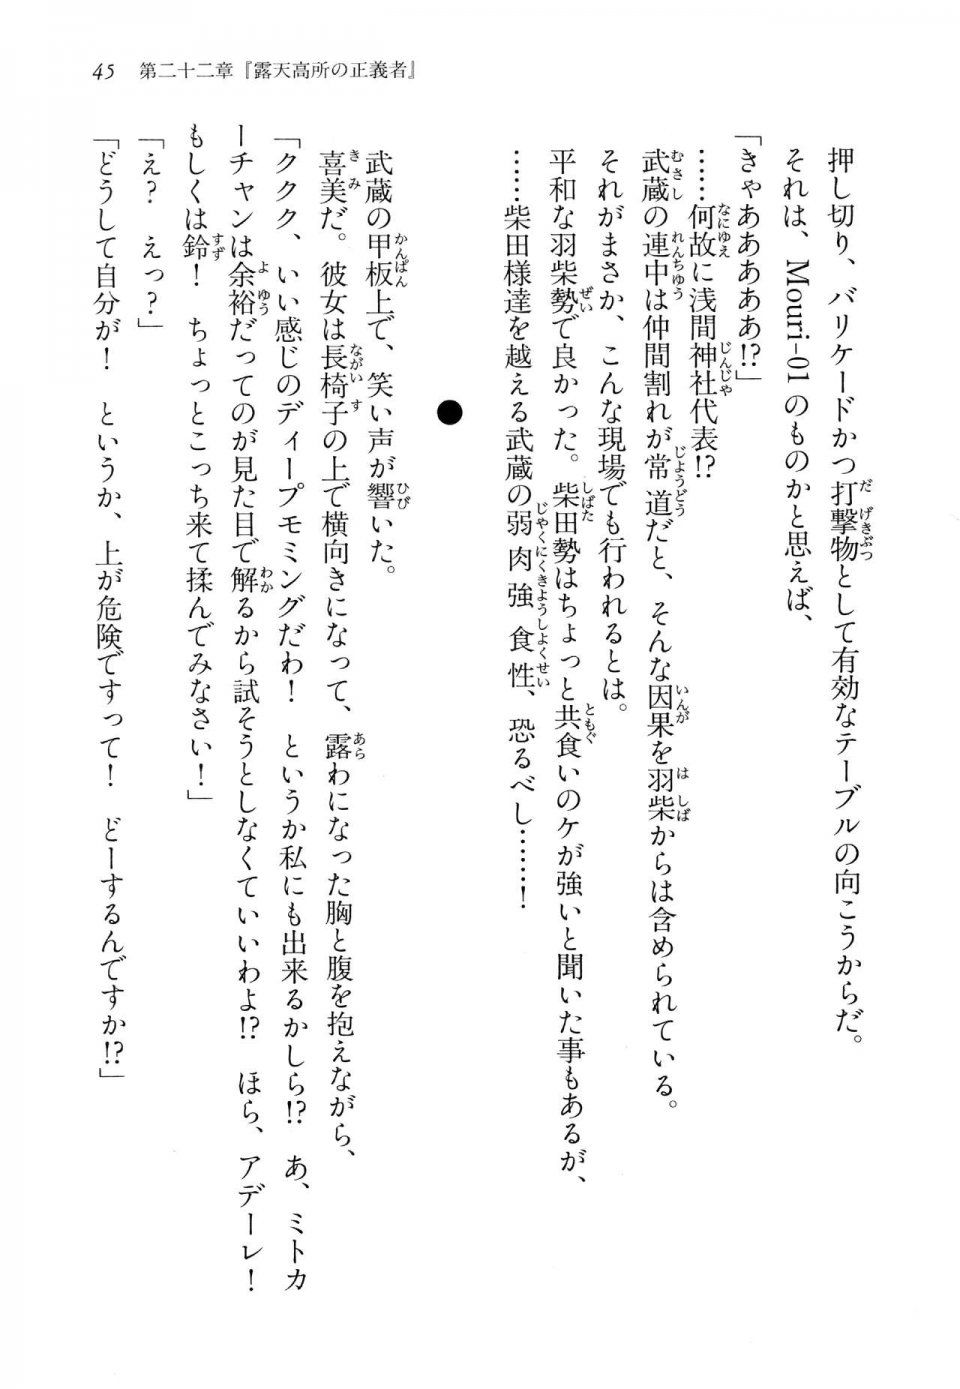 Kyoukai Senjou no Horizon LN Vol 14(6B) - Photo #45